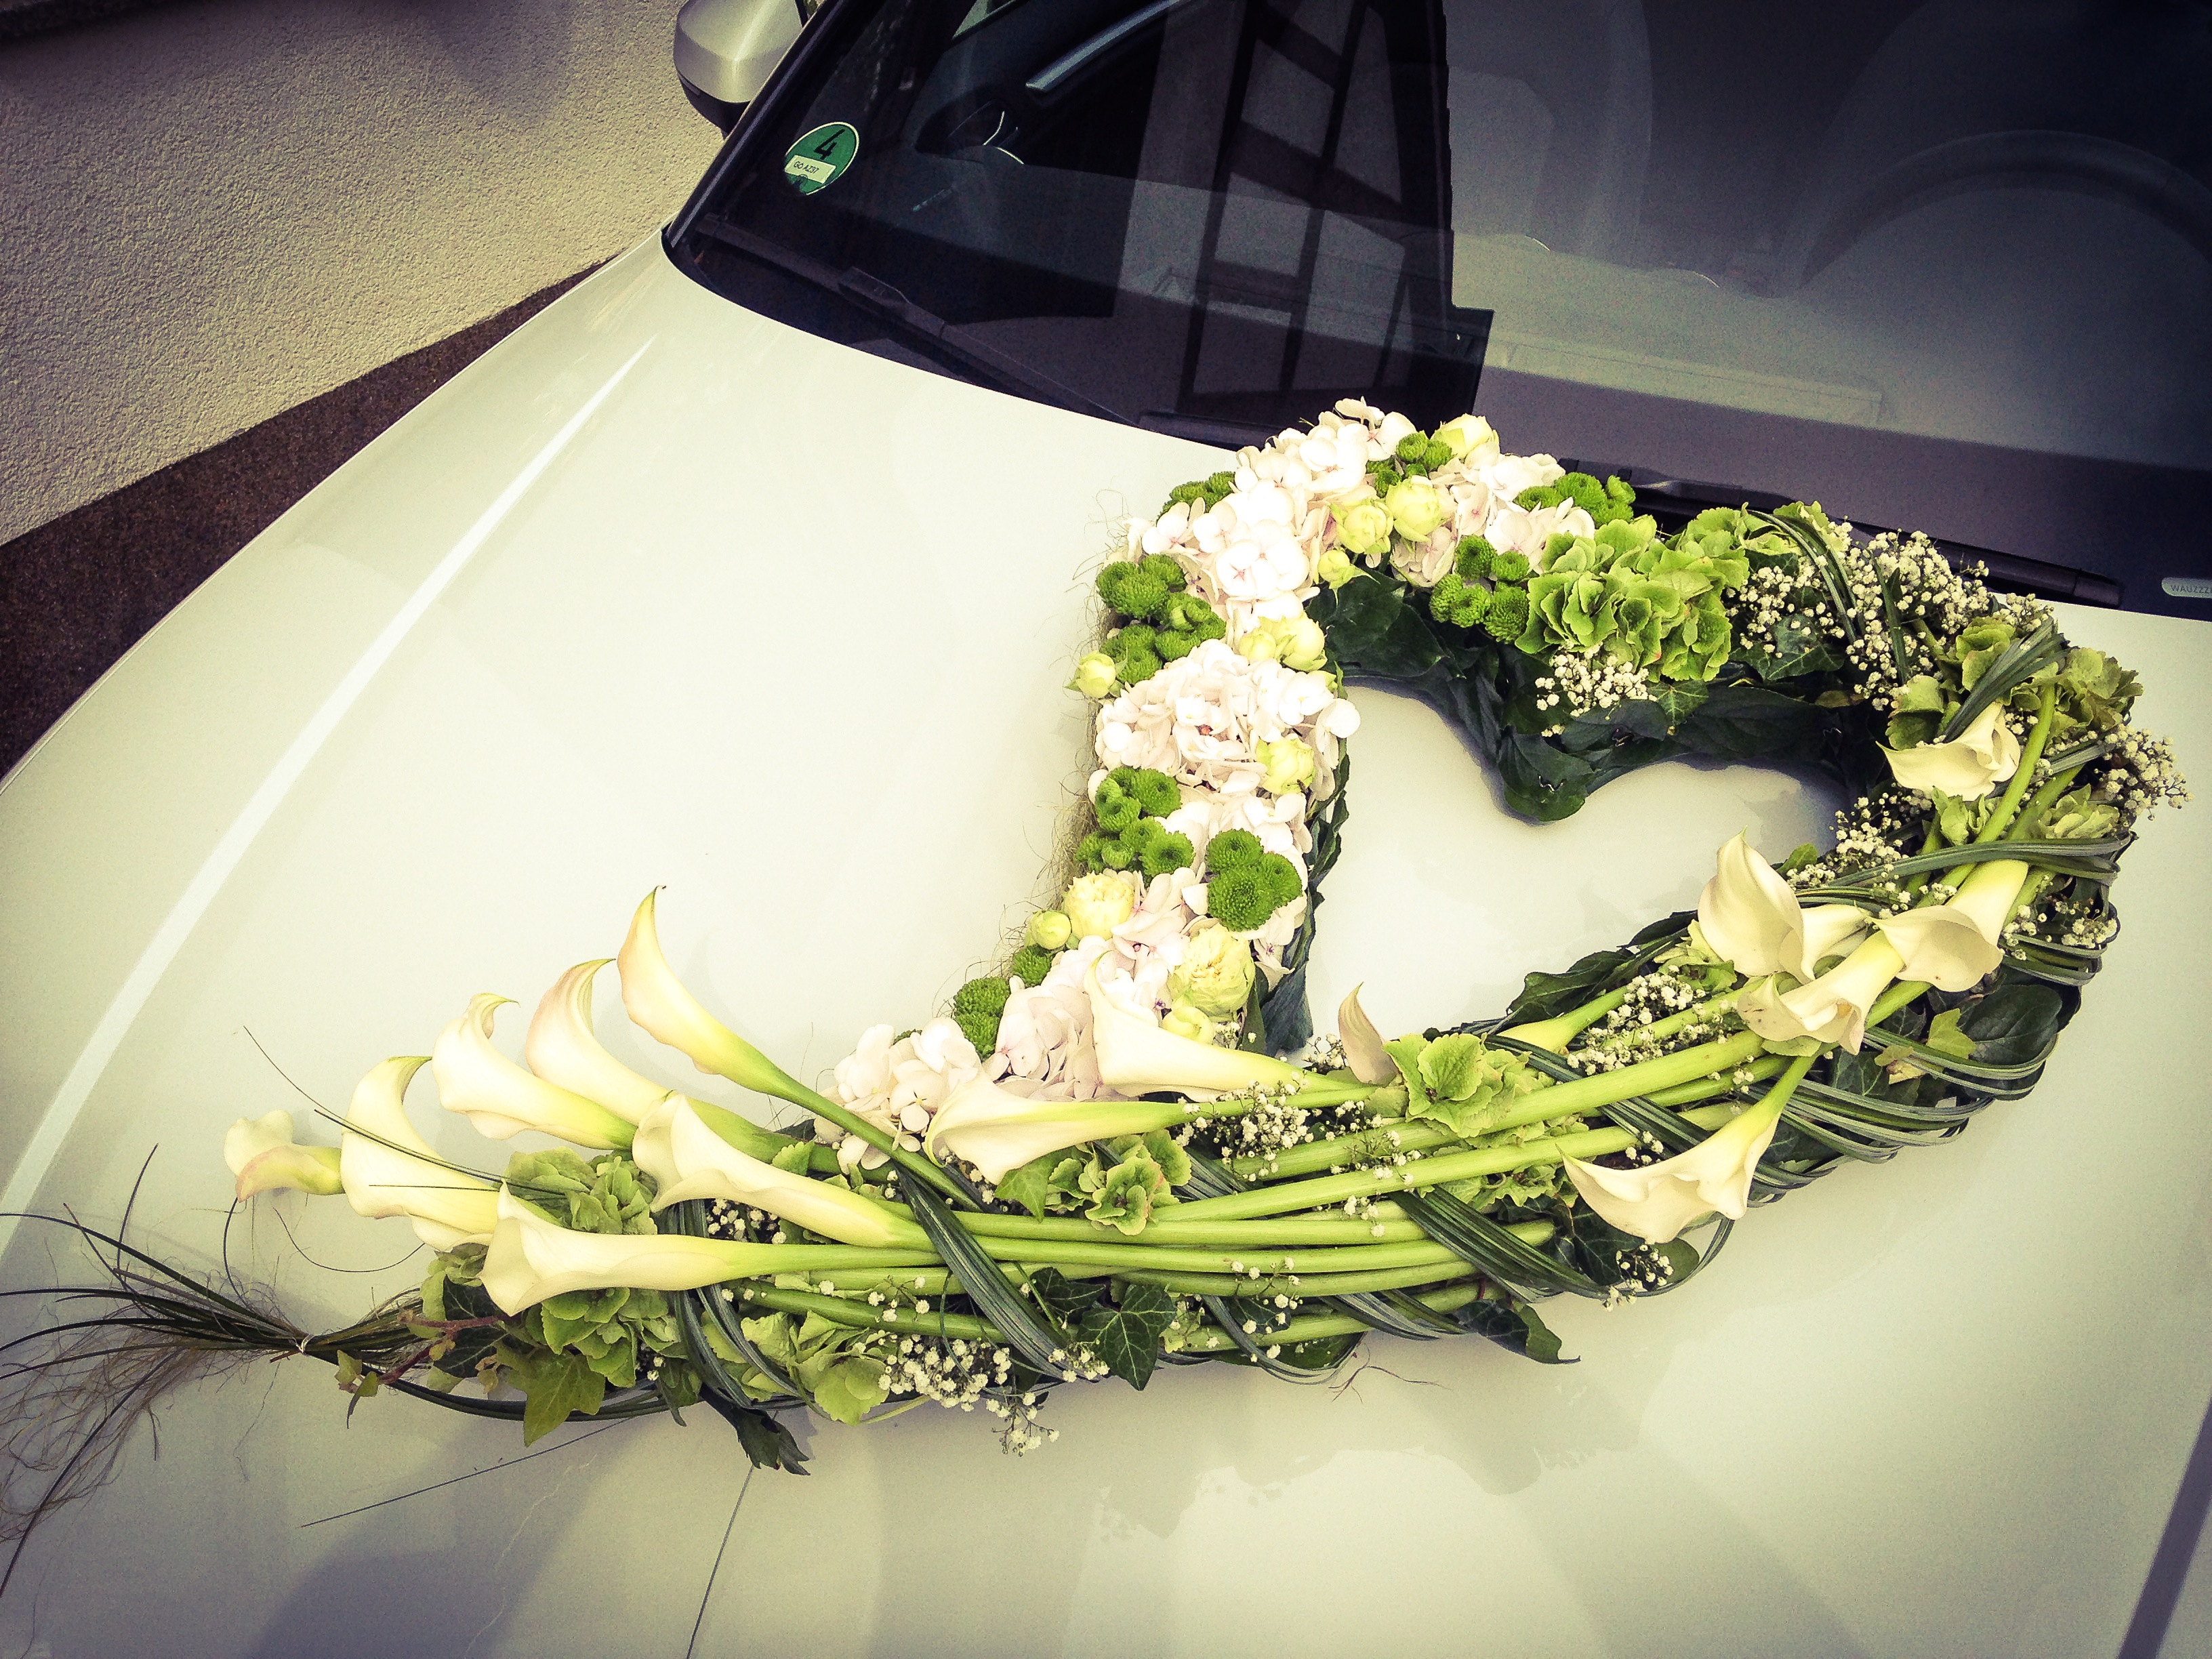 Blumendeko für den Autoschmuck der Hochzeit